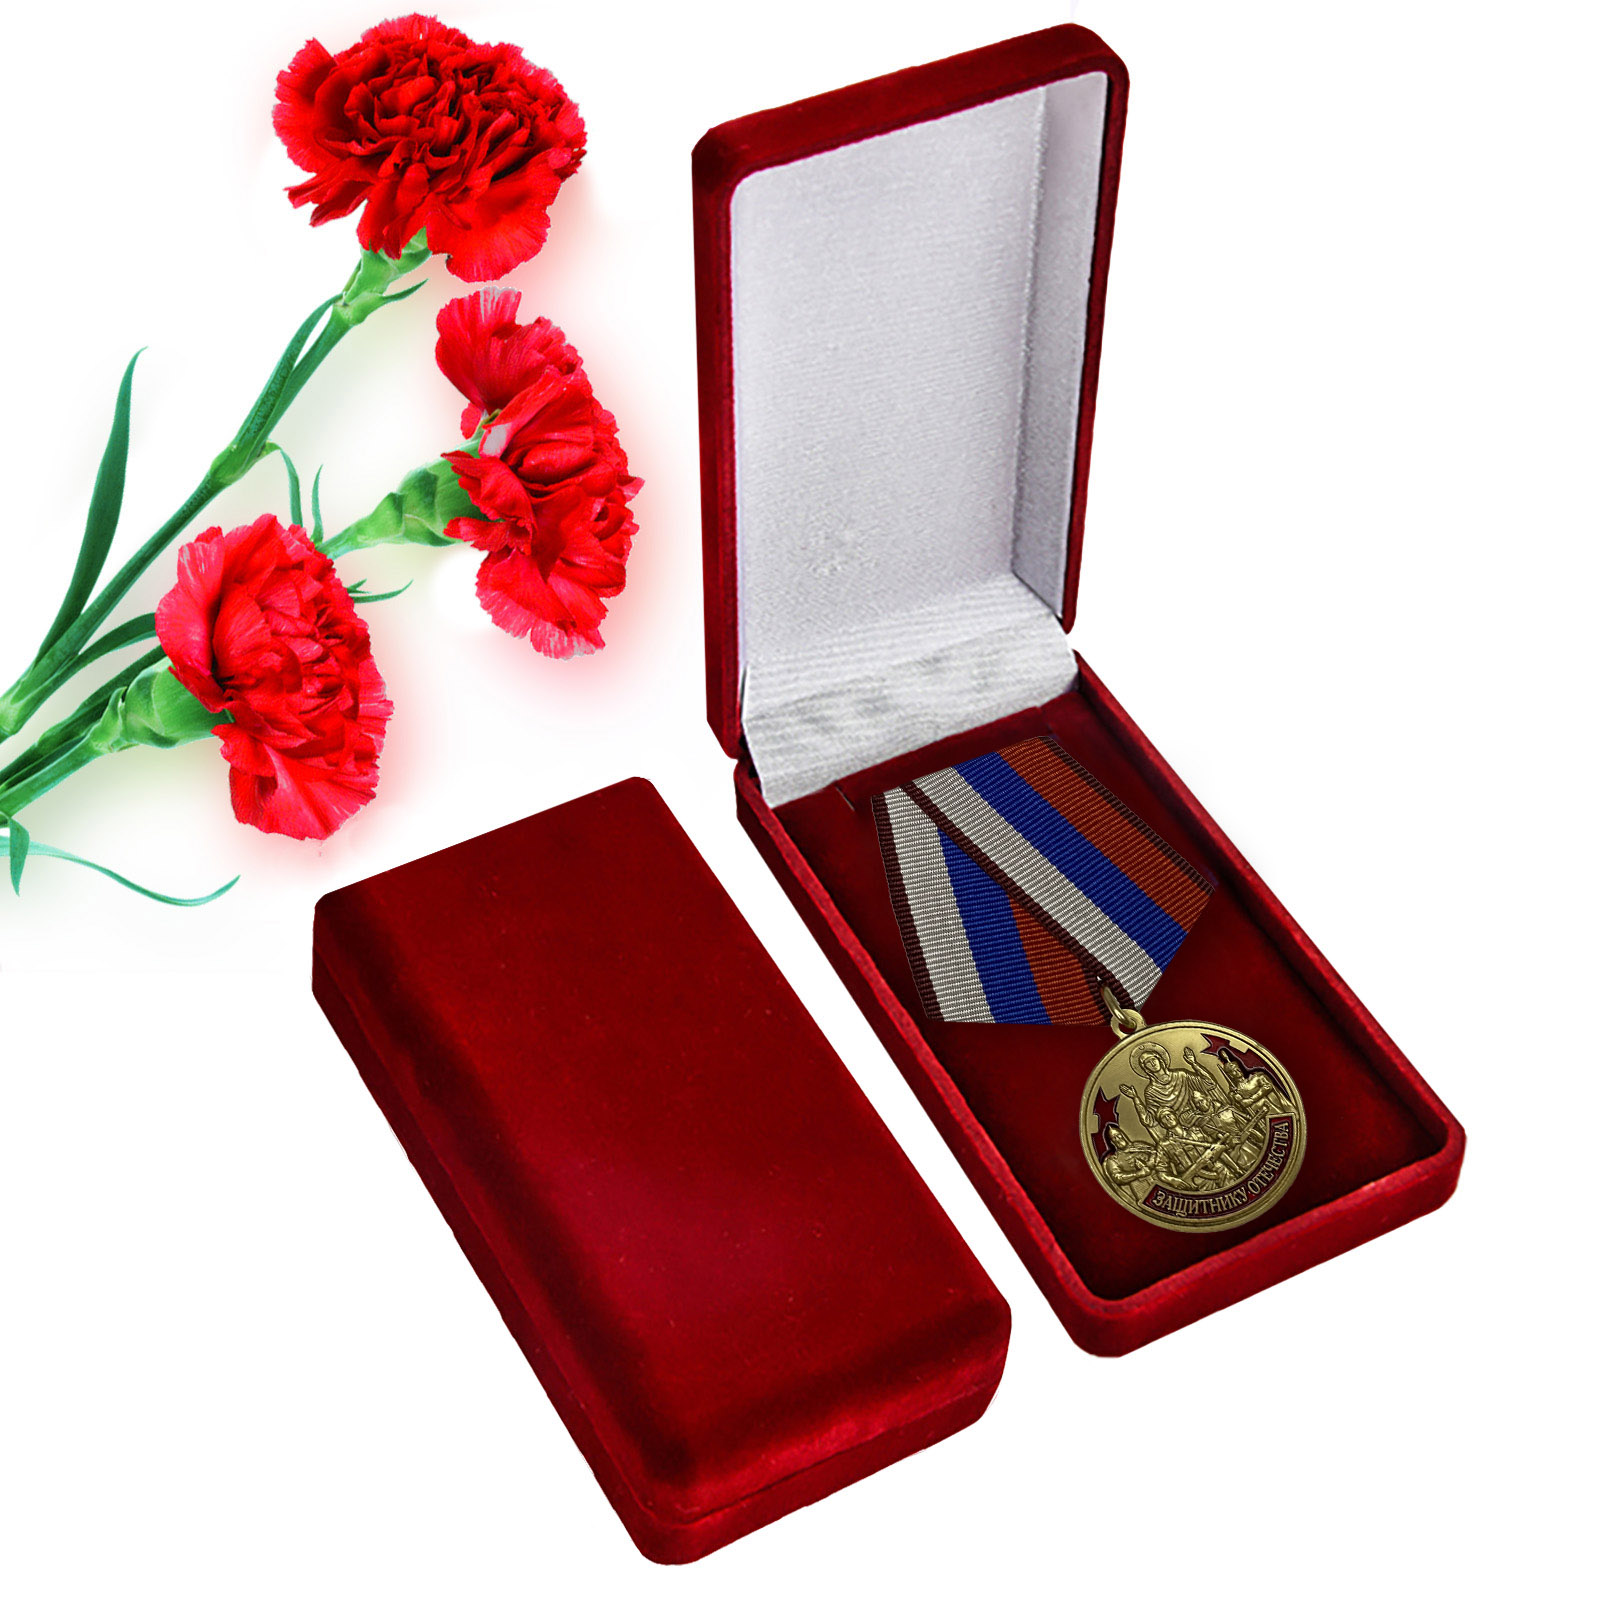 Купить наградную медаль Защитнику Отечества 23 февраля с доставкой в ваш город